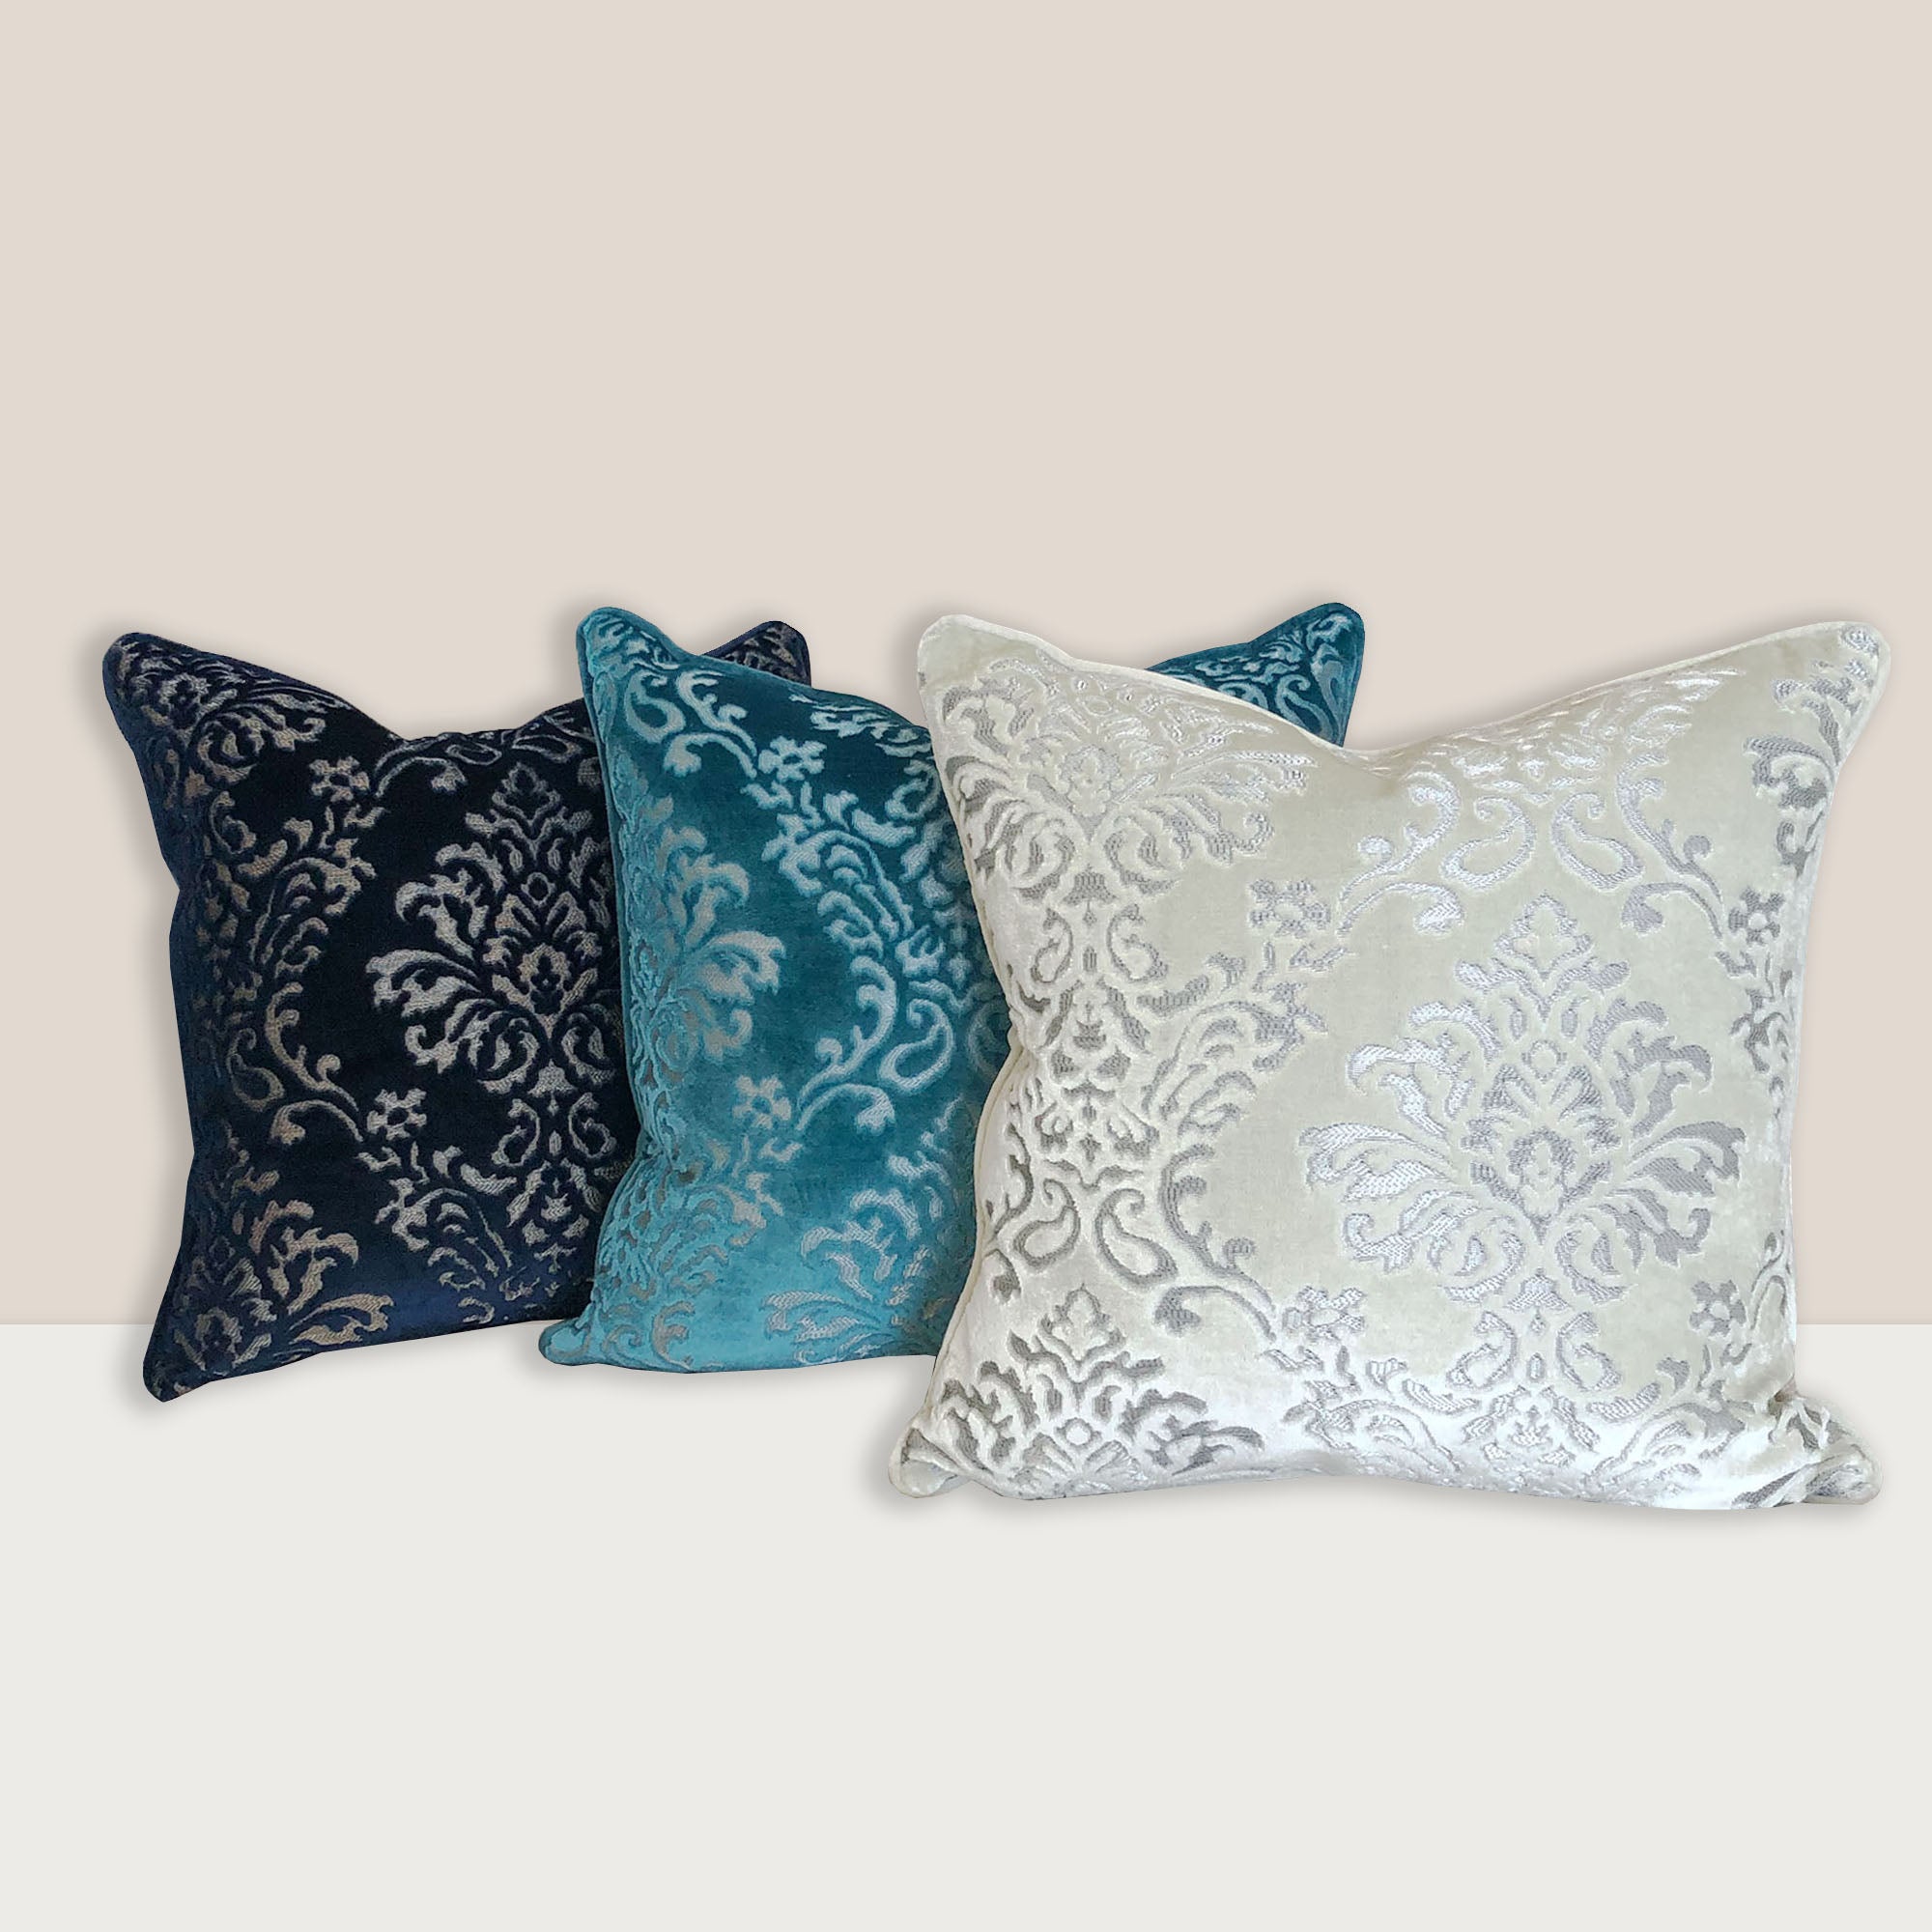 Ladan Pillows | Size 18x18